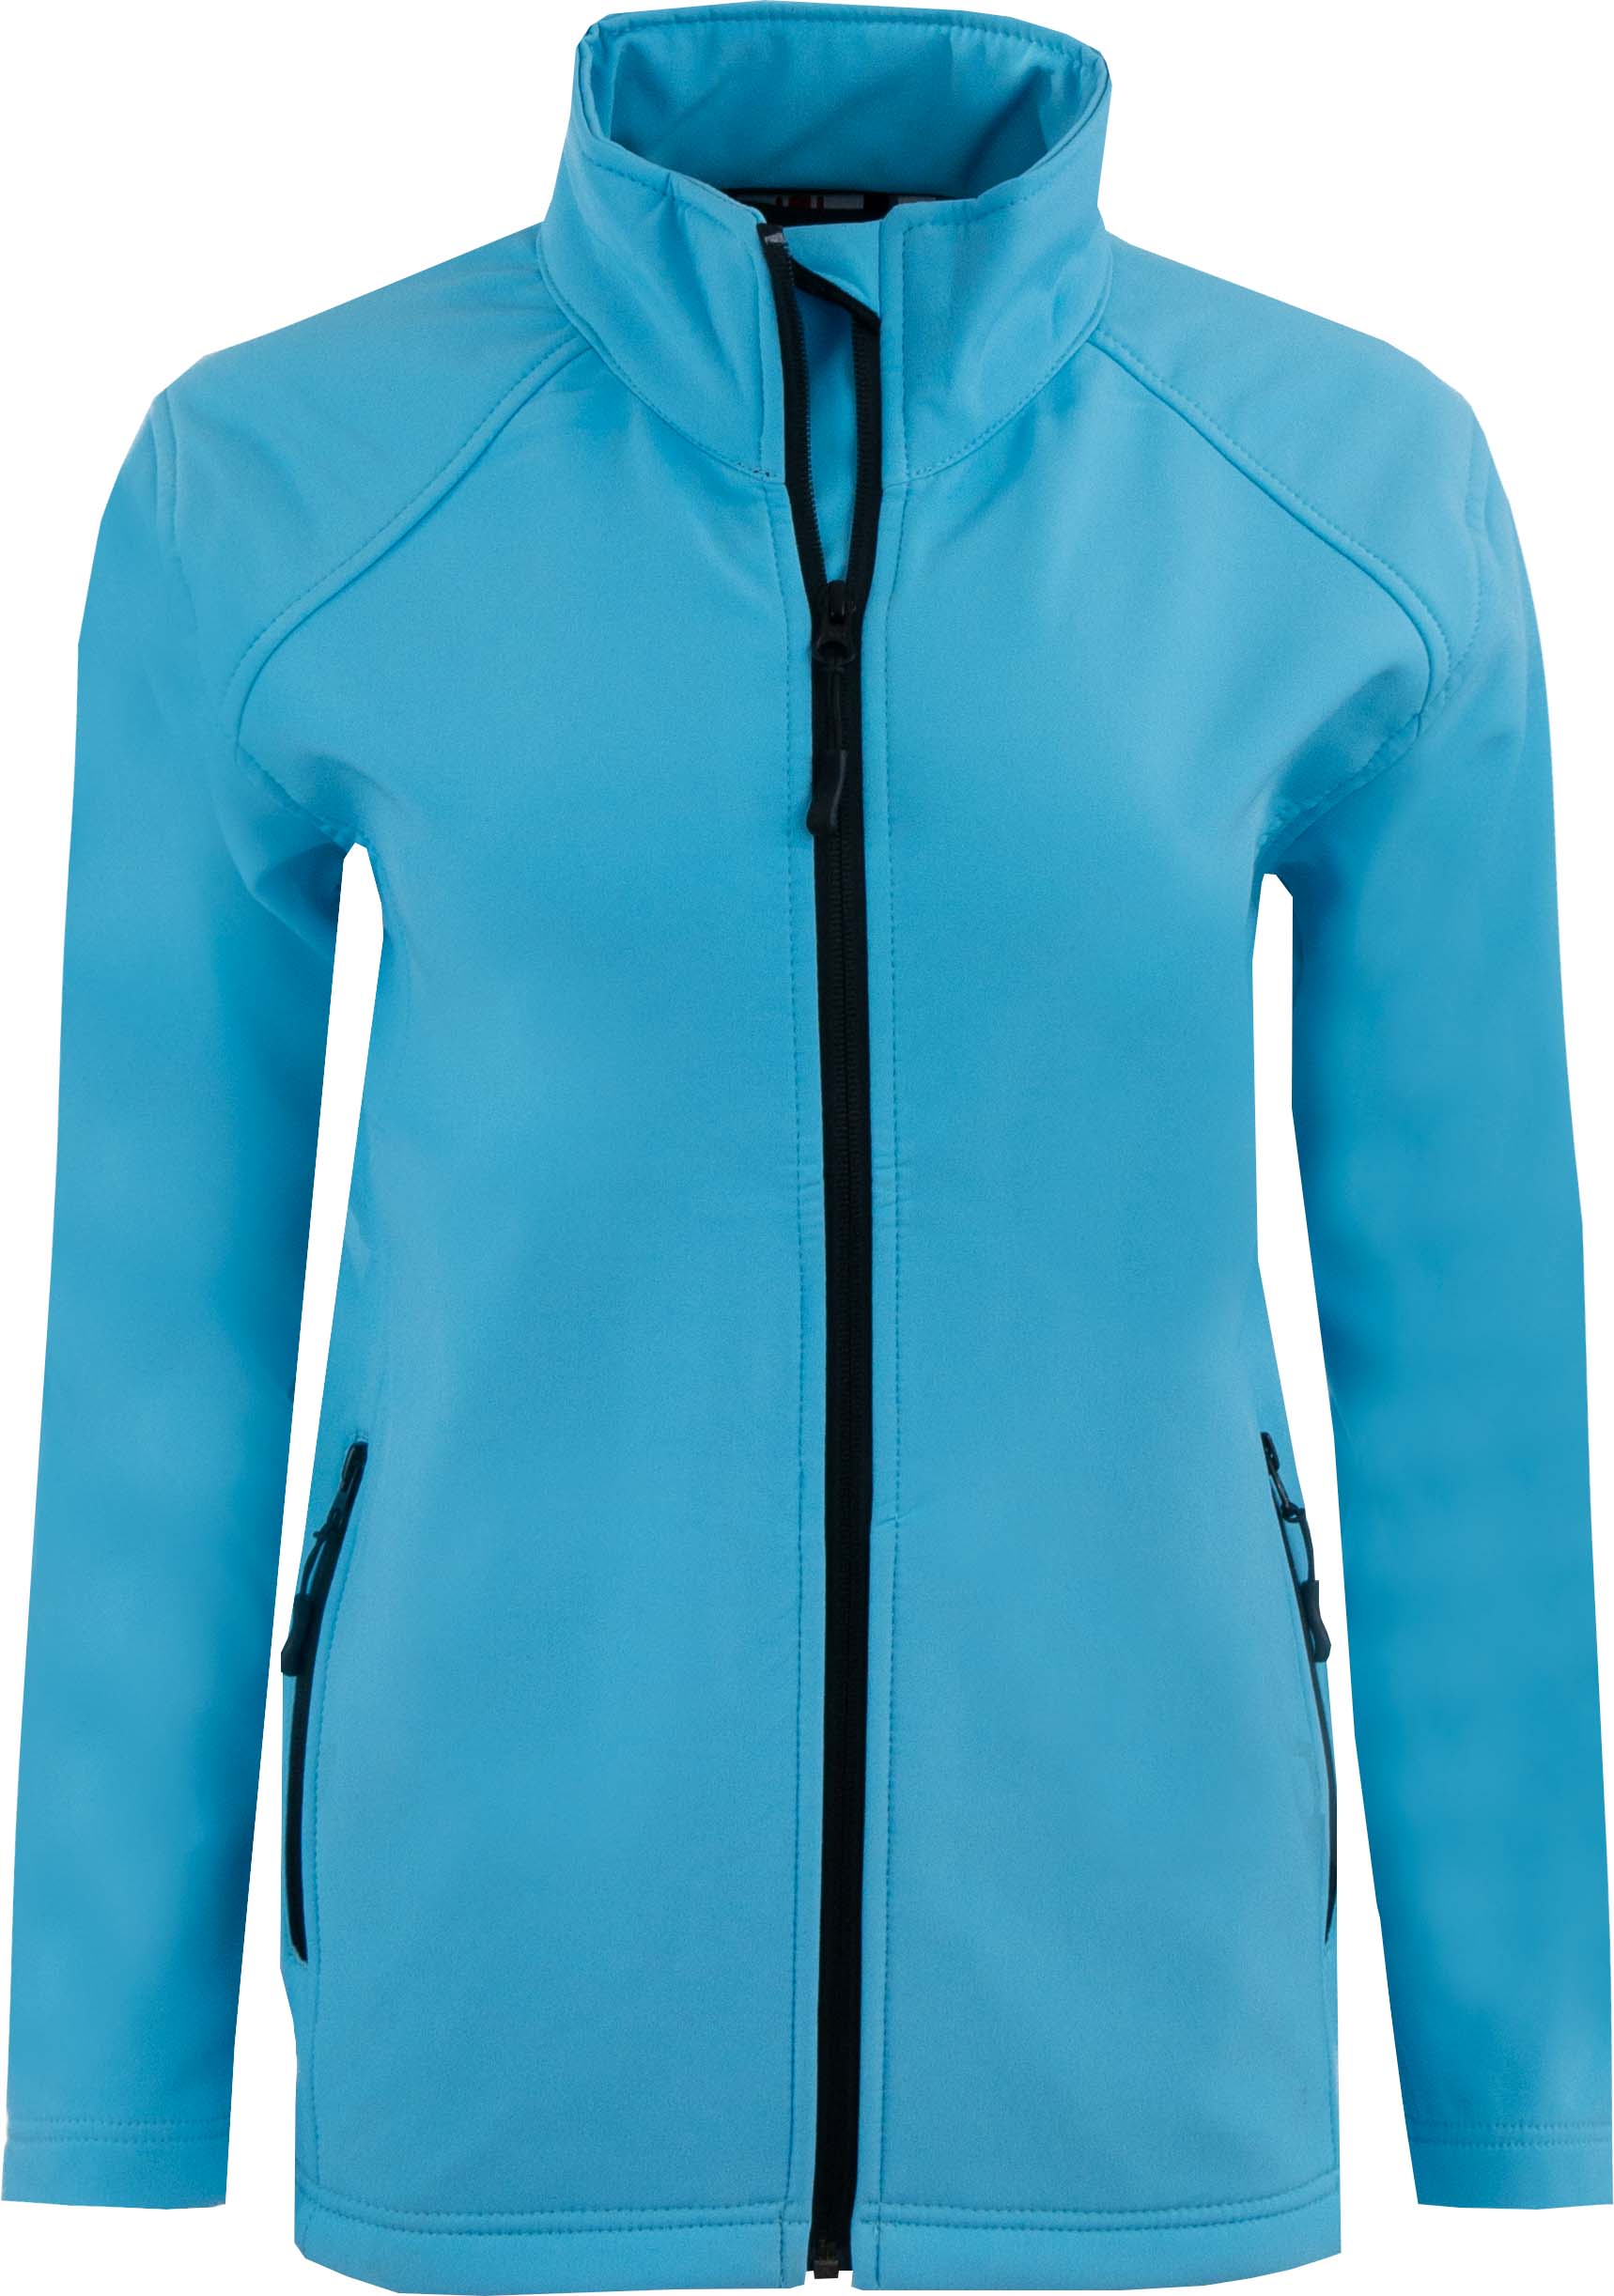 Dámská softshellová bunda Uniwear Turquoise|L